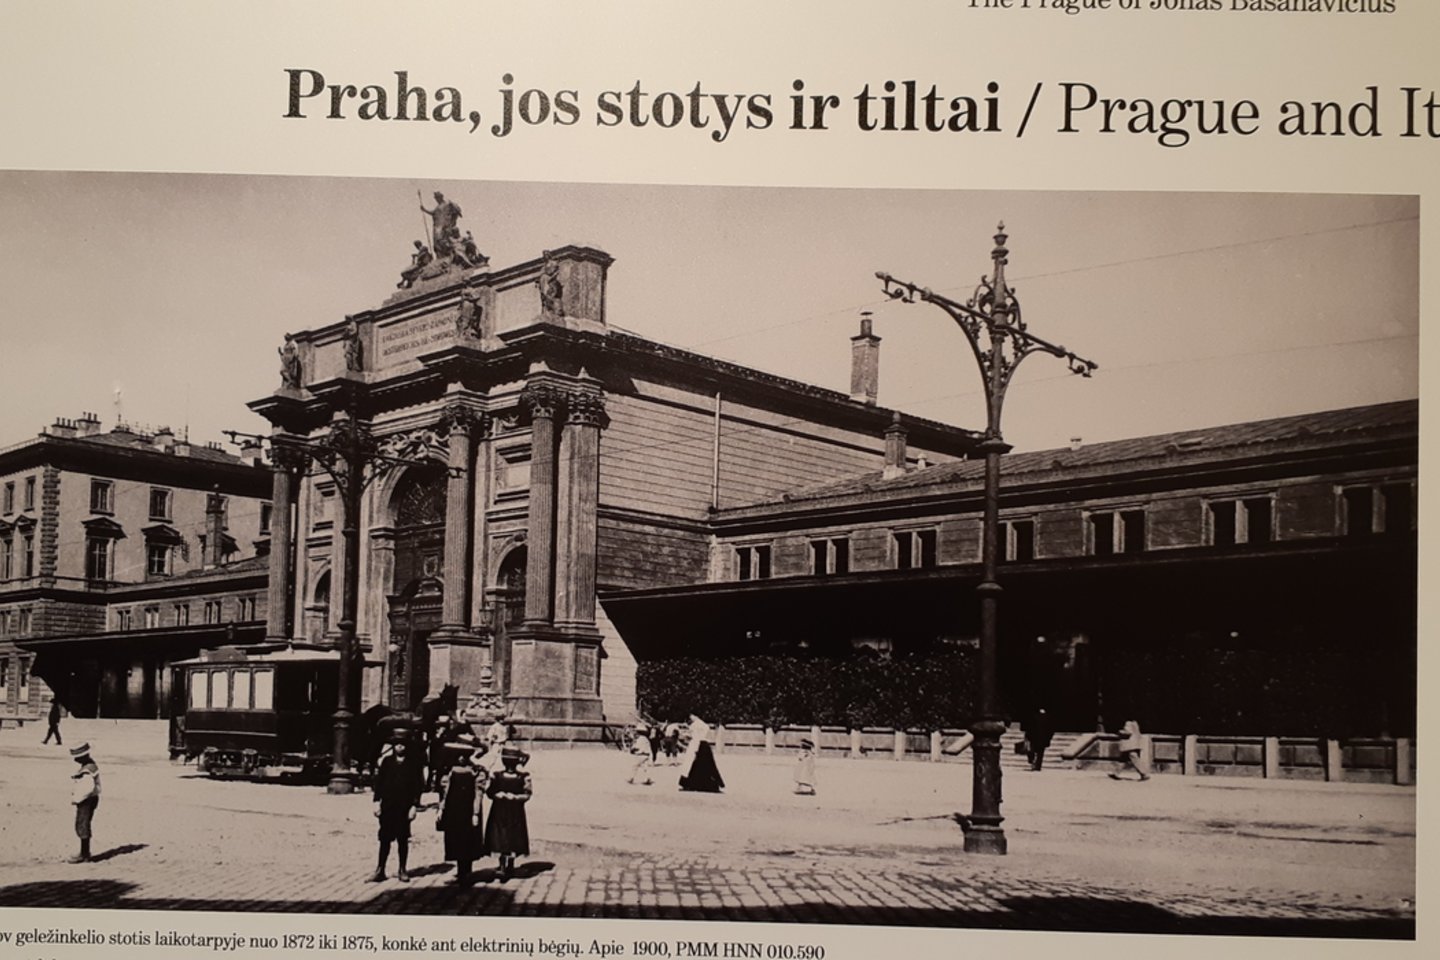 Vilniaus universiteto bibliotekoje surengtos parodos“Jono Basanavičiaus Praha“ eksponatas.